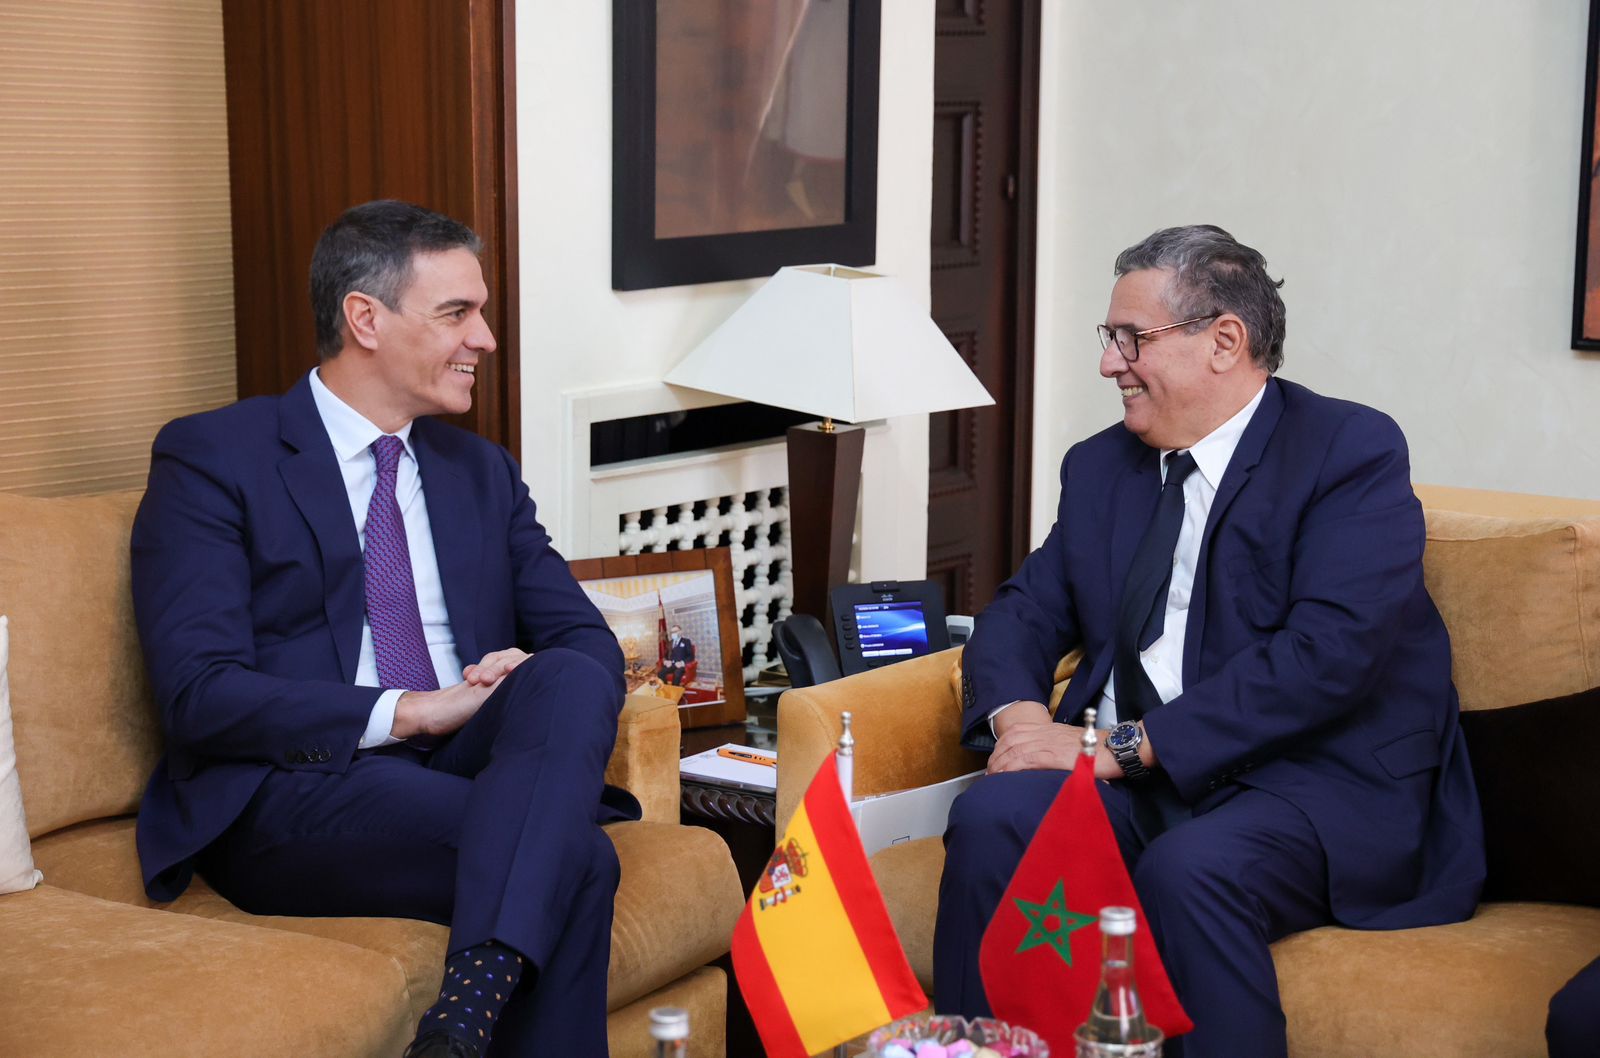 أخنوش: العلاقات الاستراتيجية مع إسبانيا تنضاف إلى أواصر الصداقة